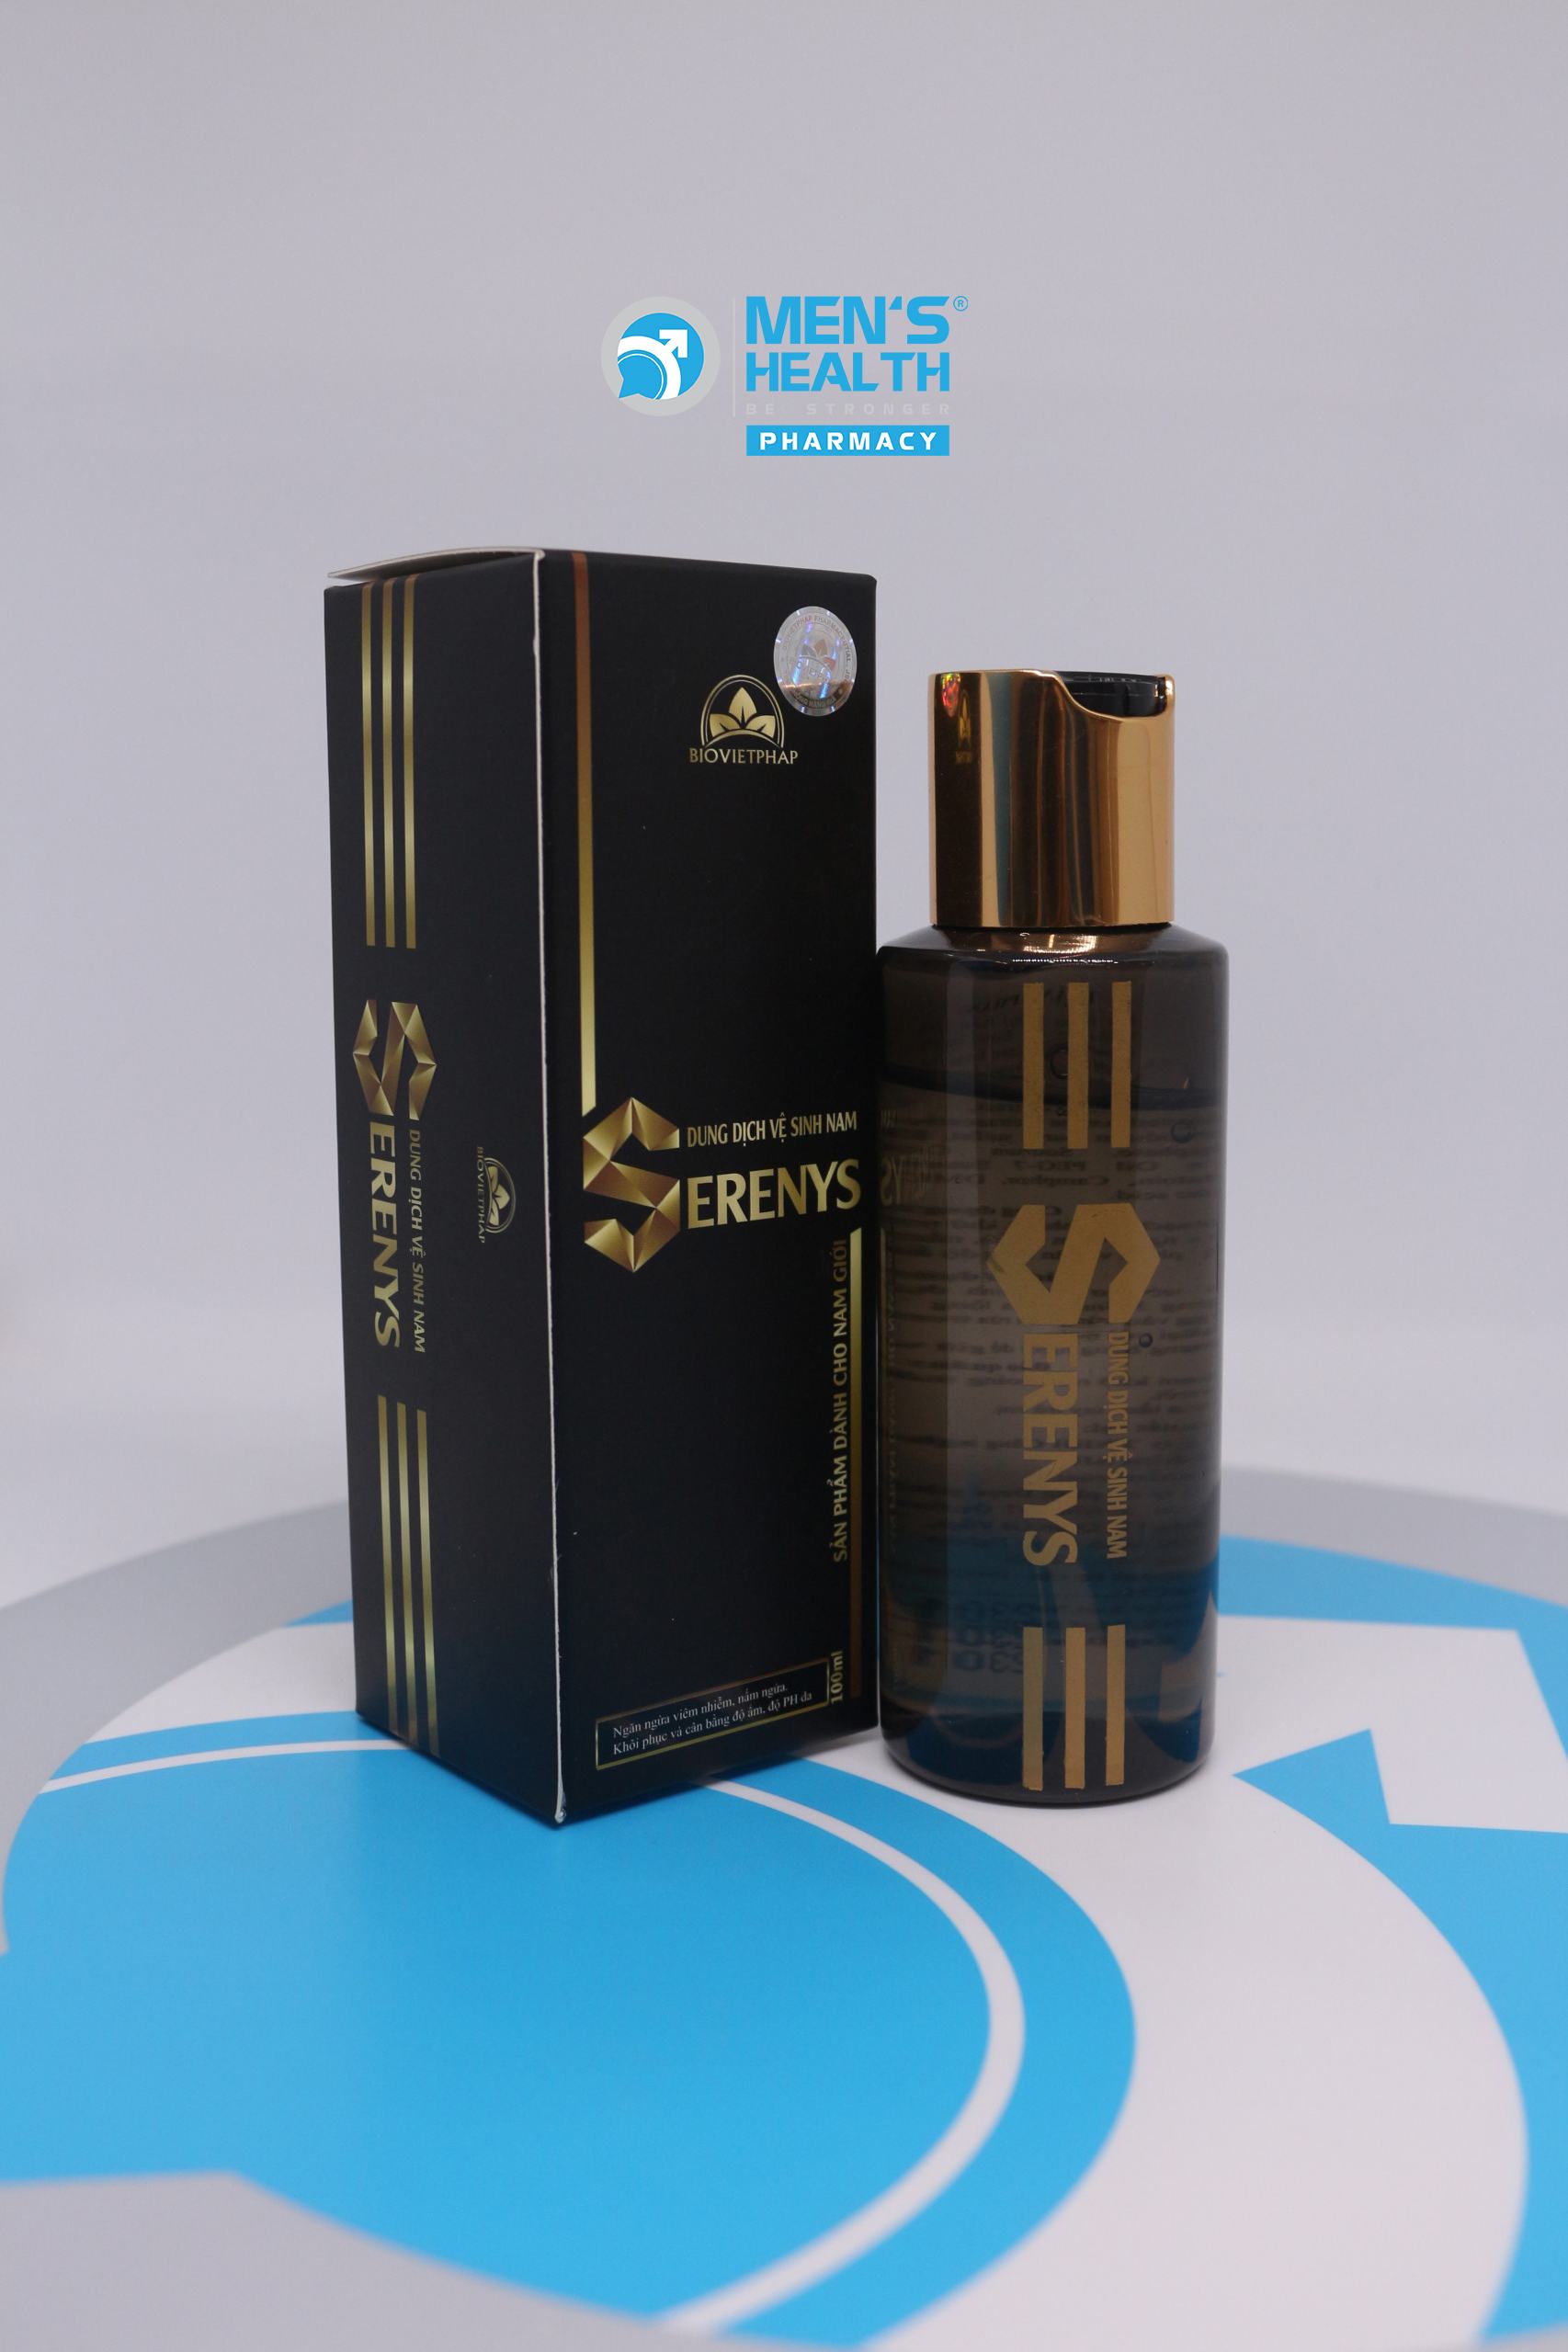 Serenys – Gel dung dịch vệ sinh nam giới